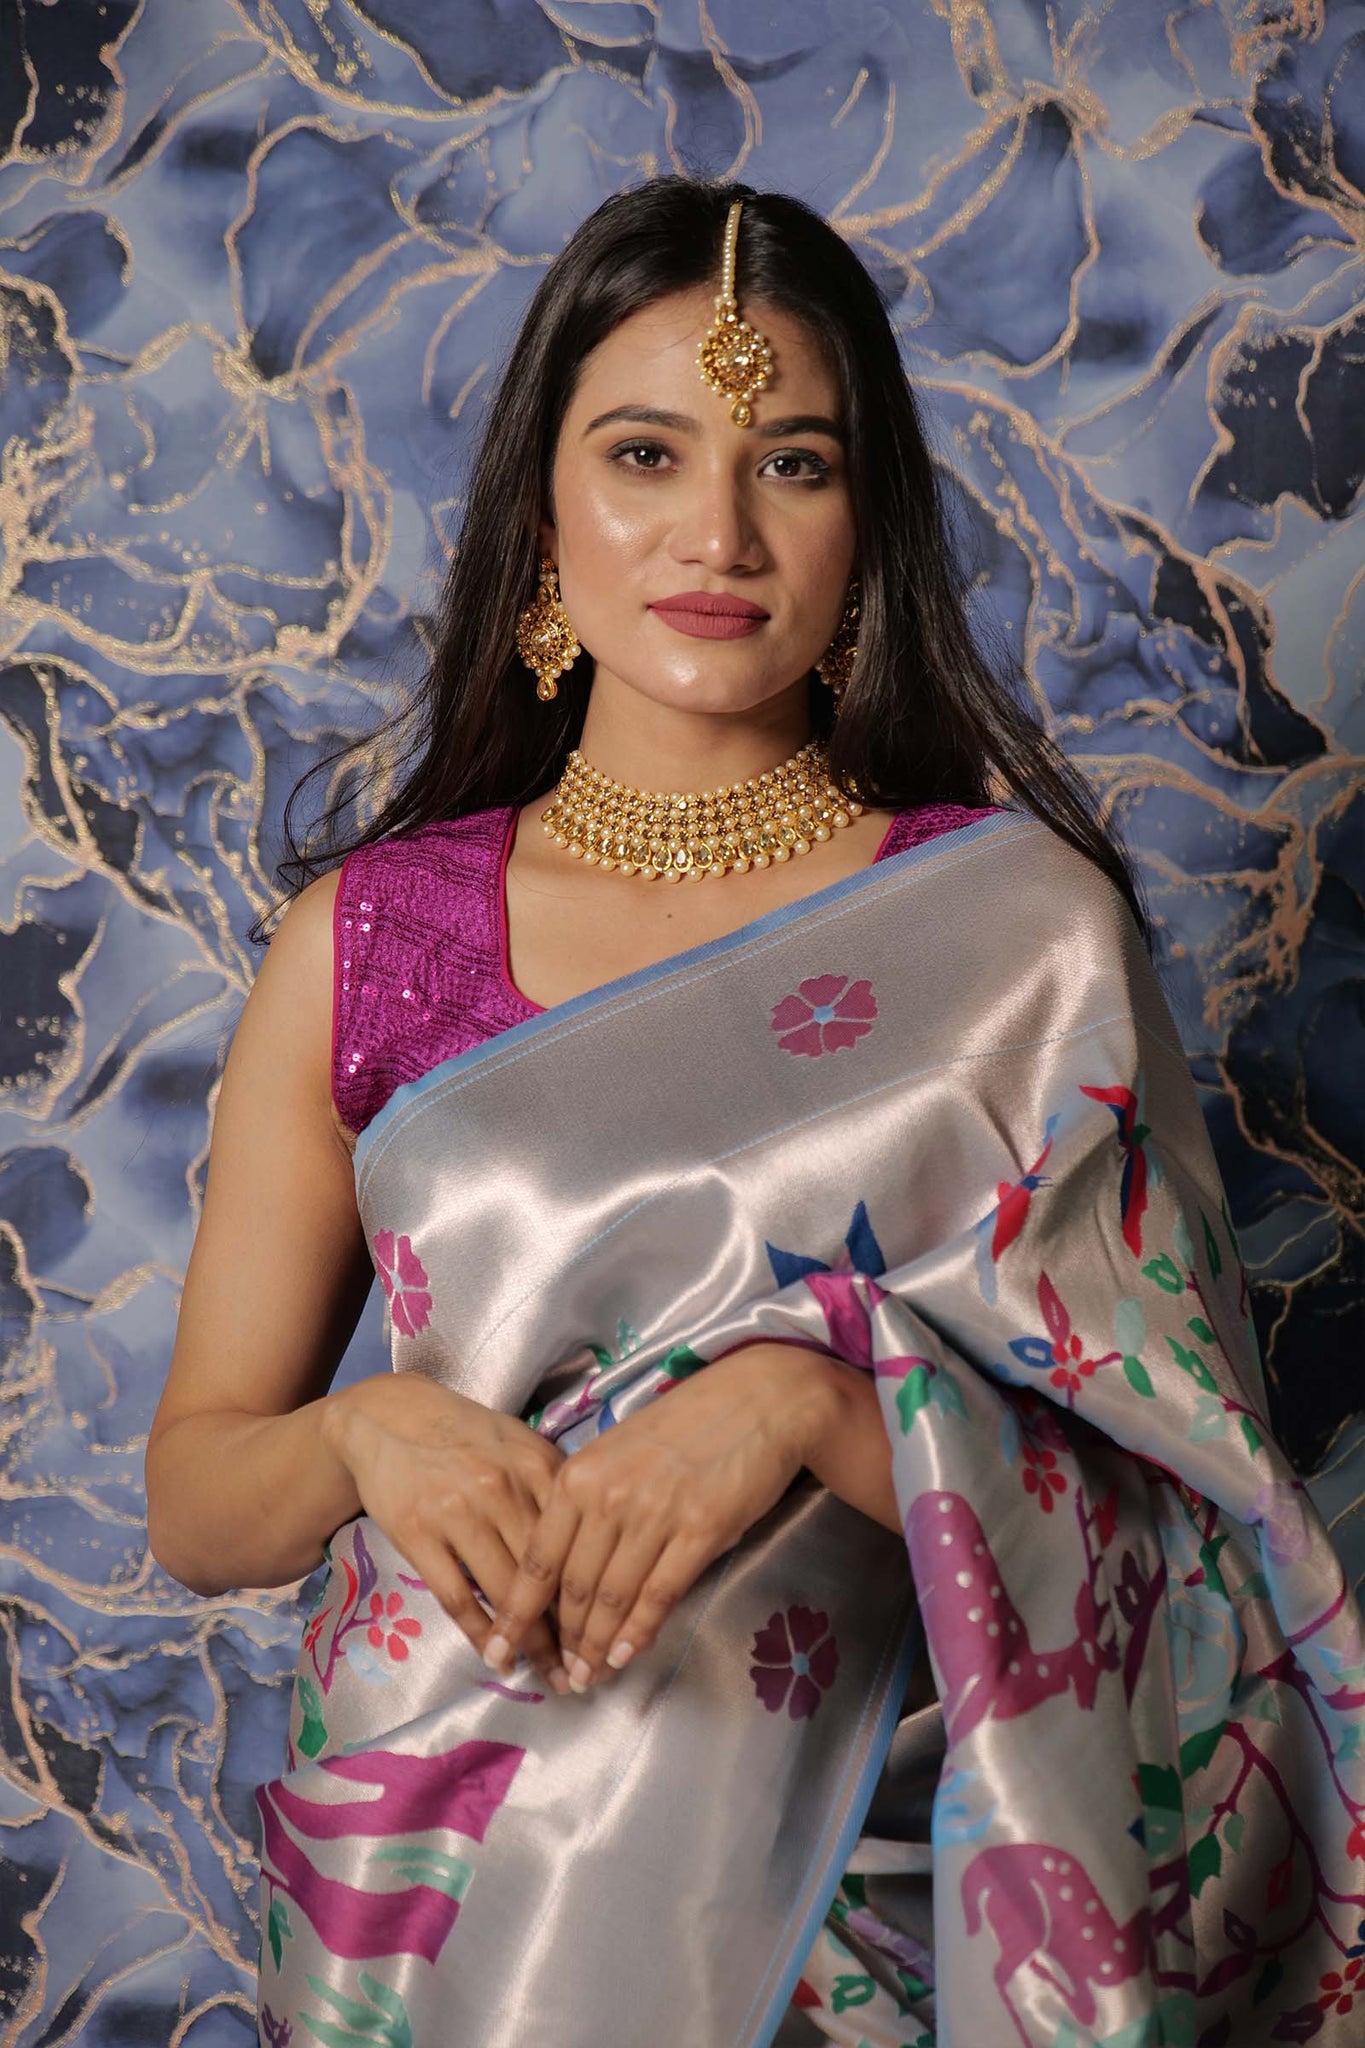 Paithani Silk Saree